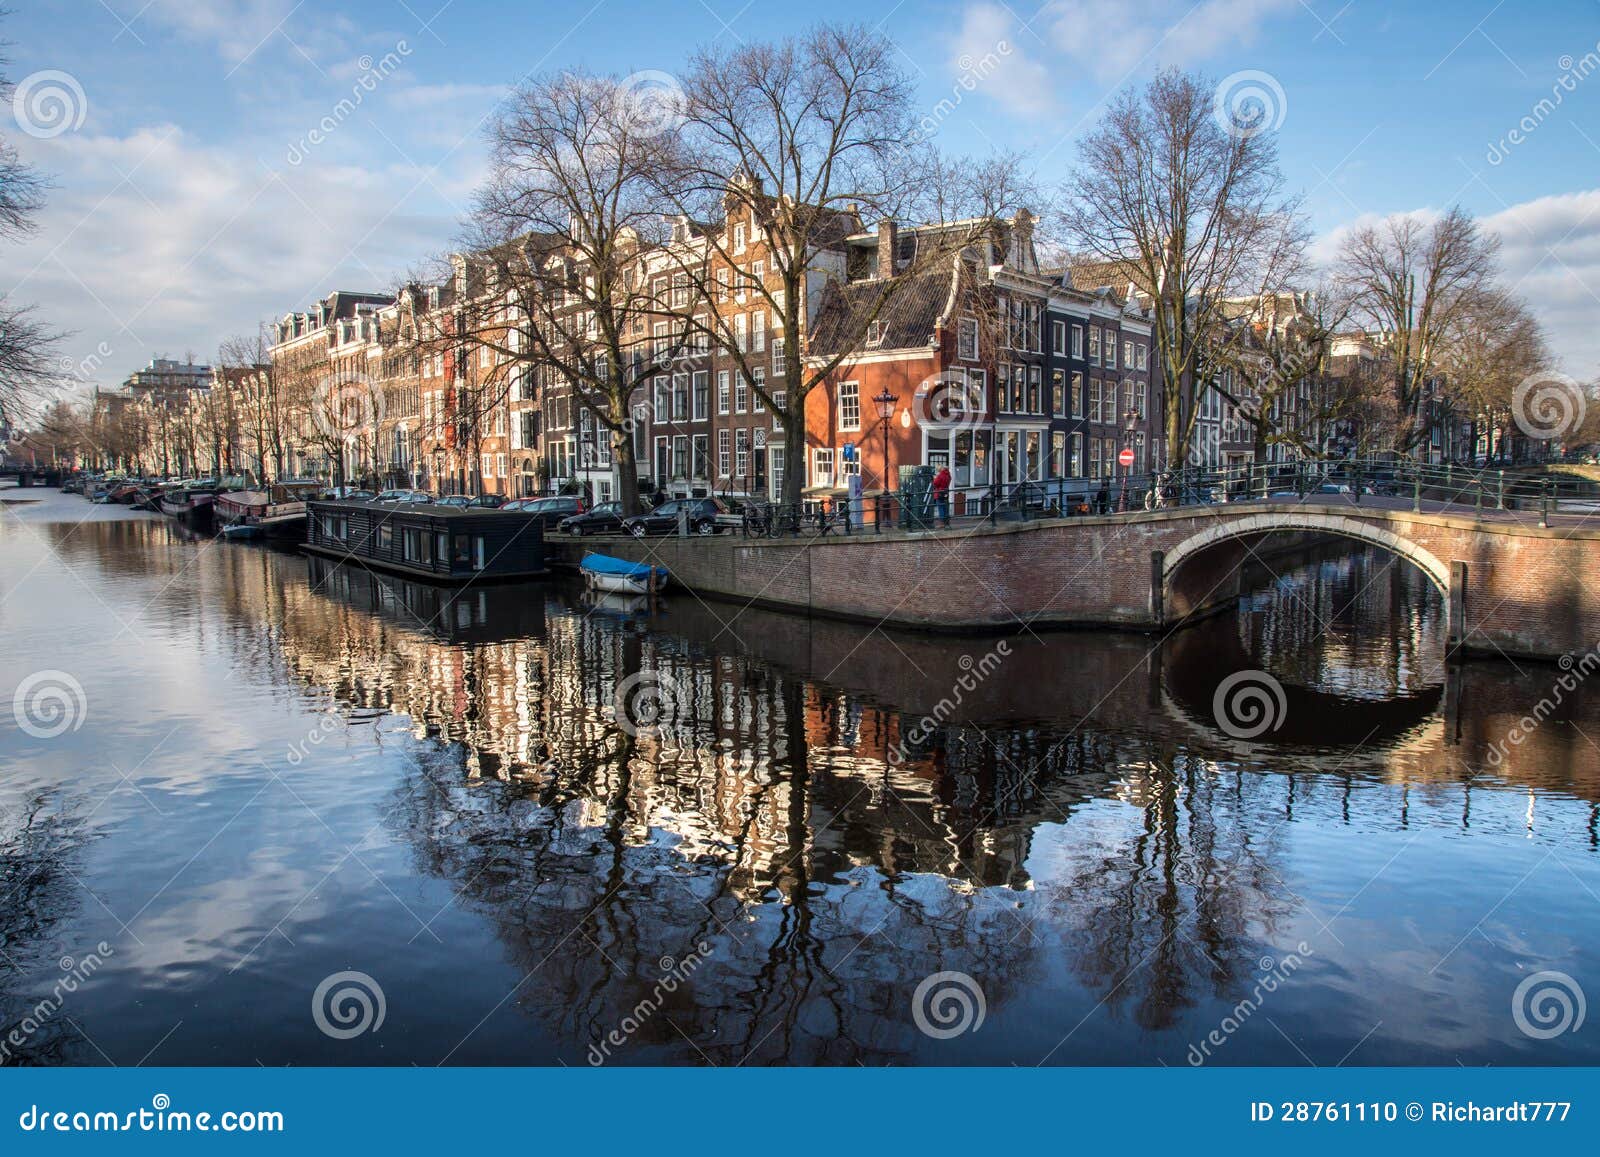 阿姆斯特丹运河. 阿姆斯特丹，荷兰的首都，称Northfor的威尼斯其超过一百公里运河、大约90个海岛和1,500座桥梁。